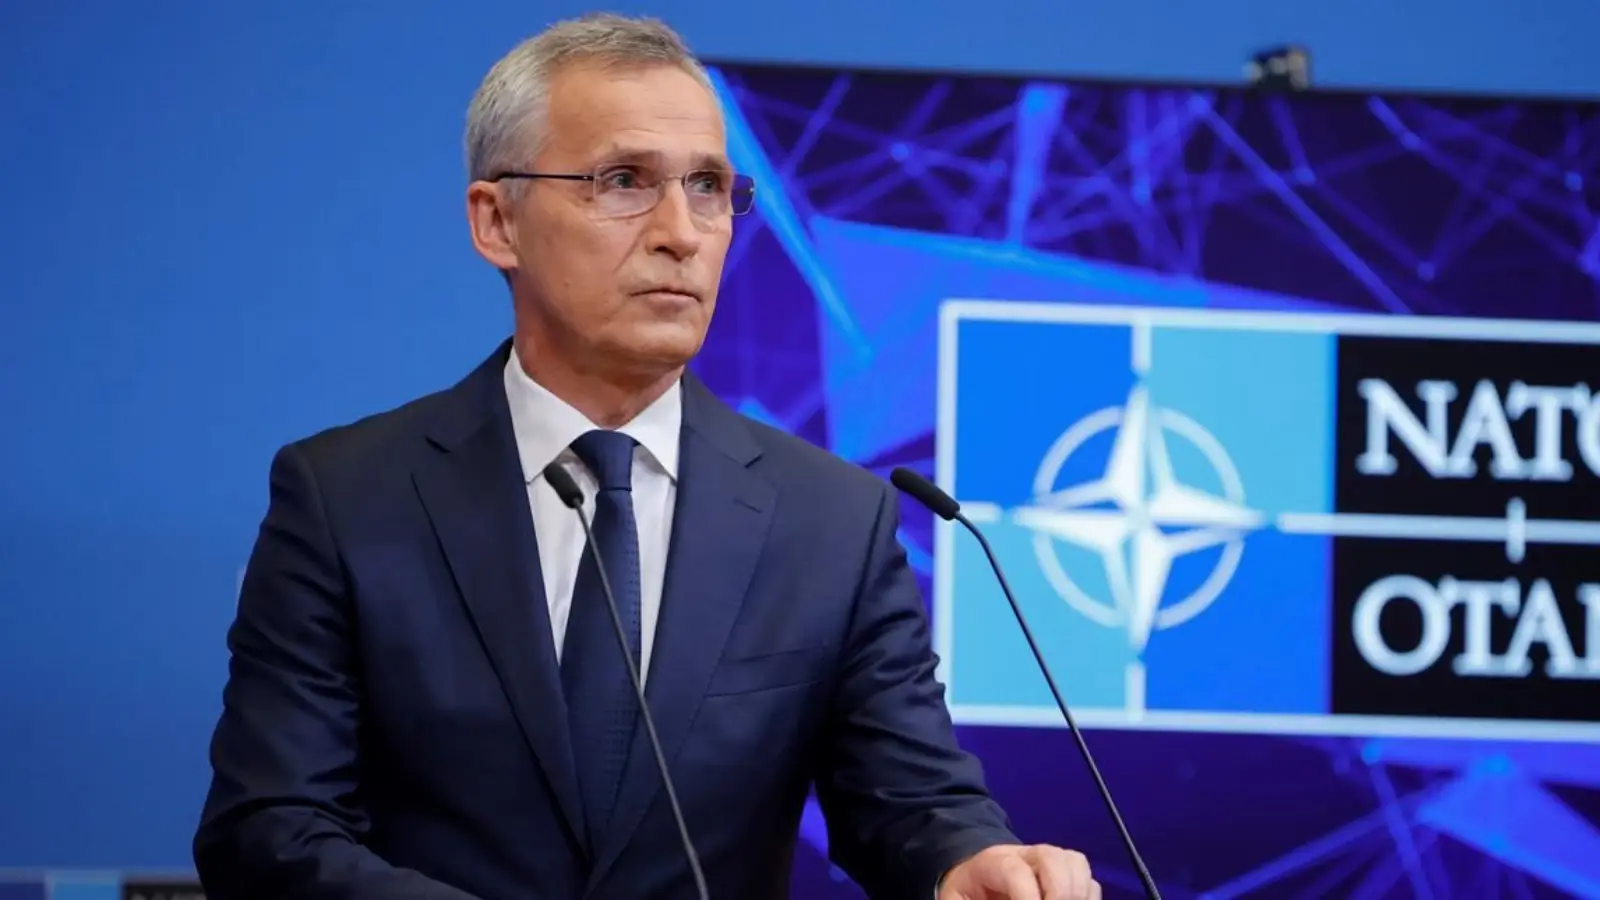 Die NATO sendet eine besorgniserregende Ankündigung zum Krieg, an dem auch Rumänien beteiligt ist